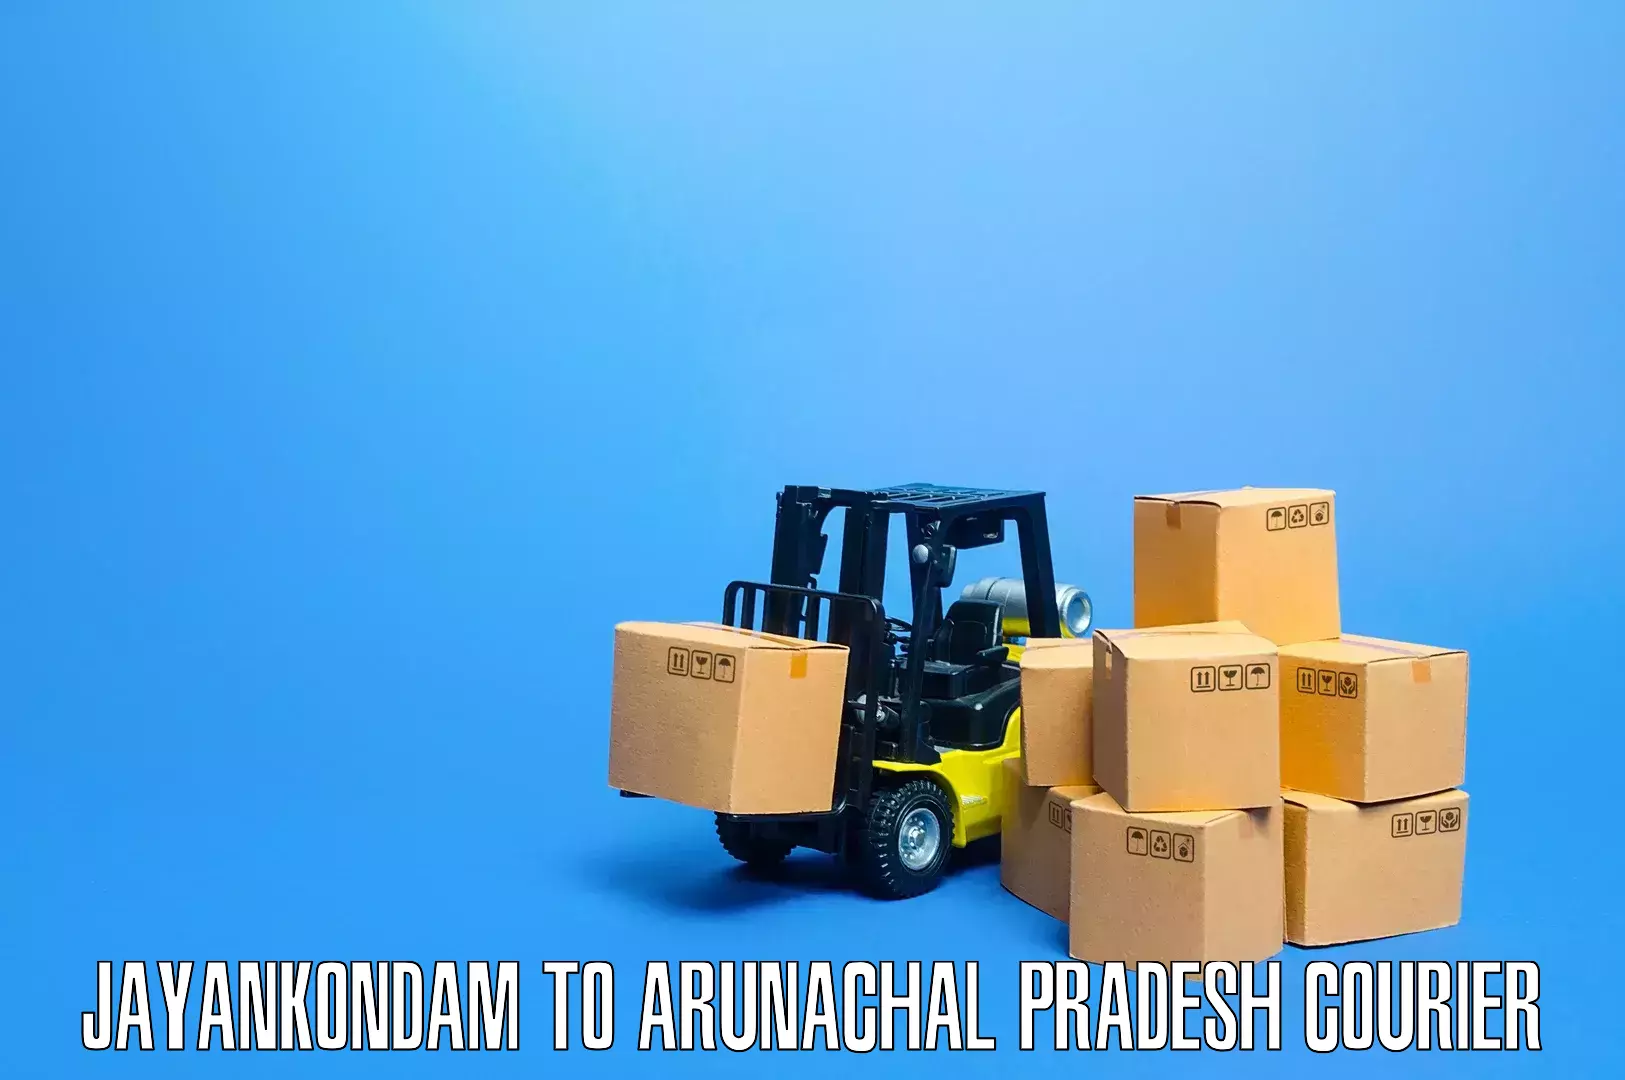 Furniture moving experts Jayankondam to Deomali